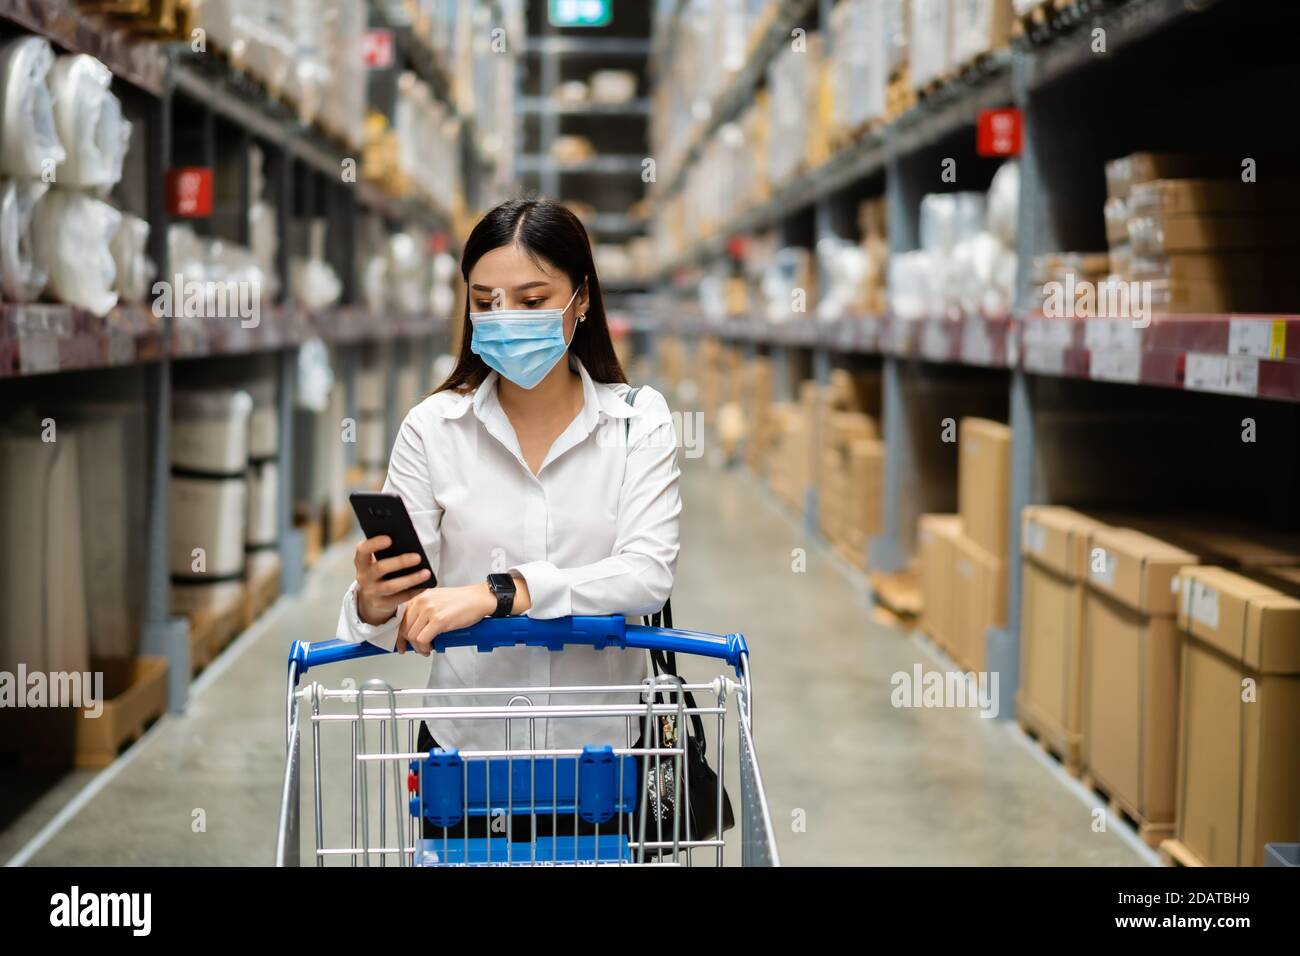 mujer con máscara médica mirando su teléfono móvil y. compras en el almacén durante la pandemia del coronavirus (covid-19) Foto de stock